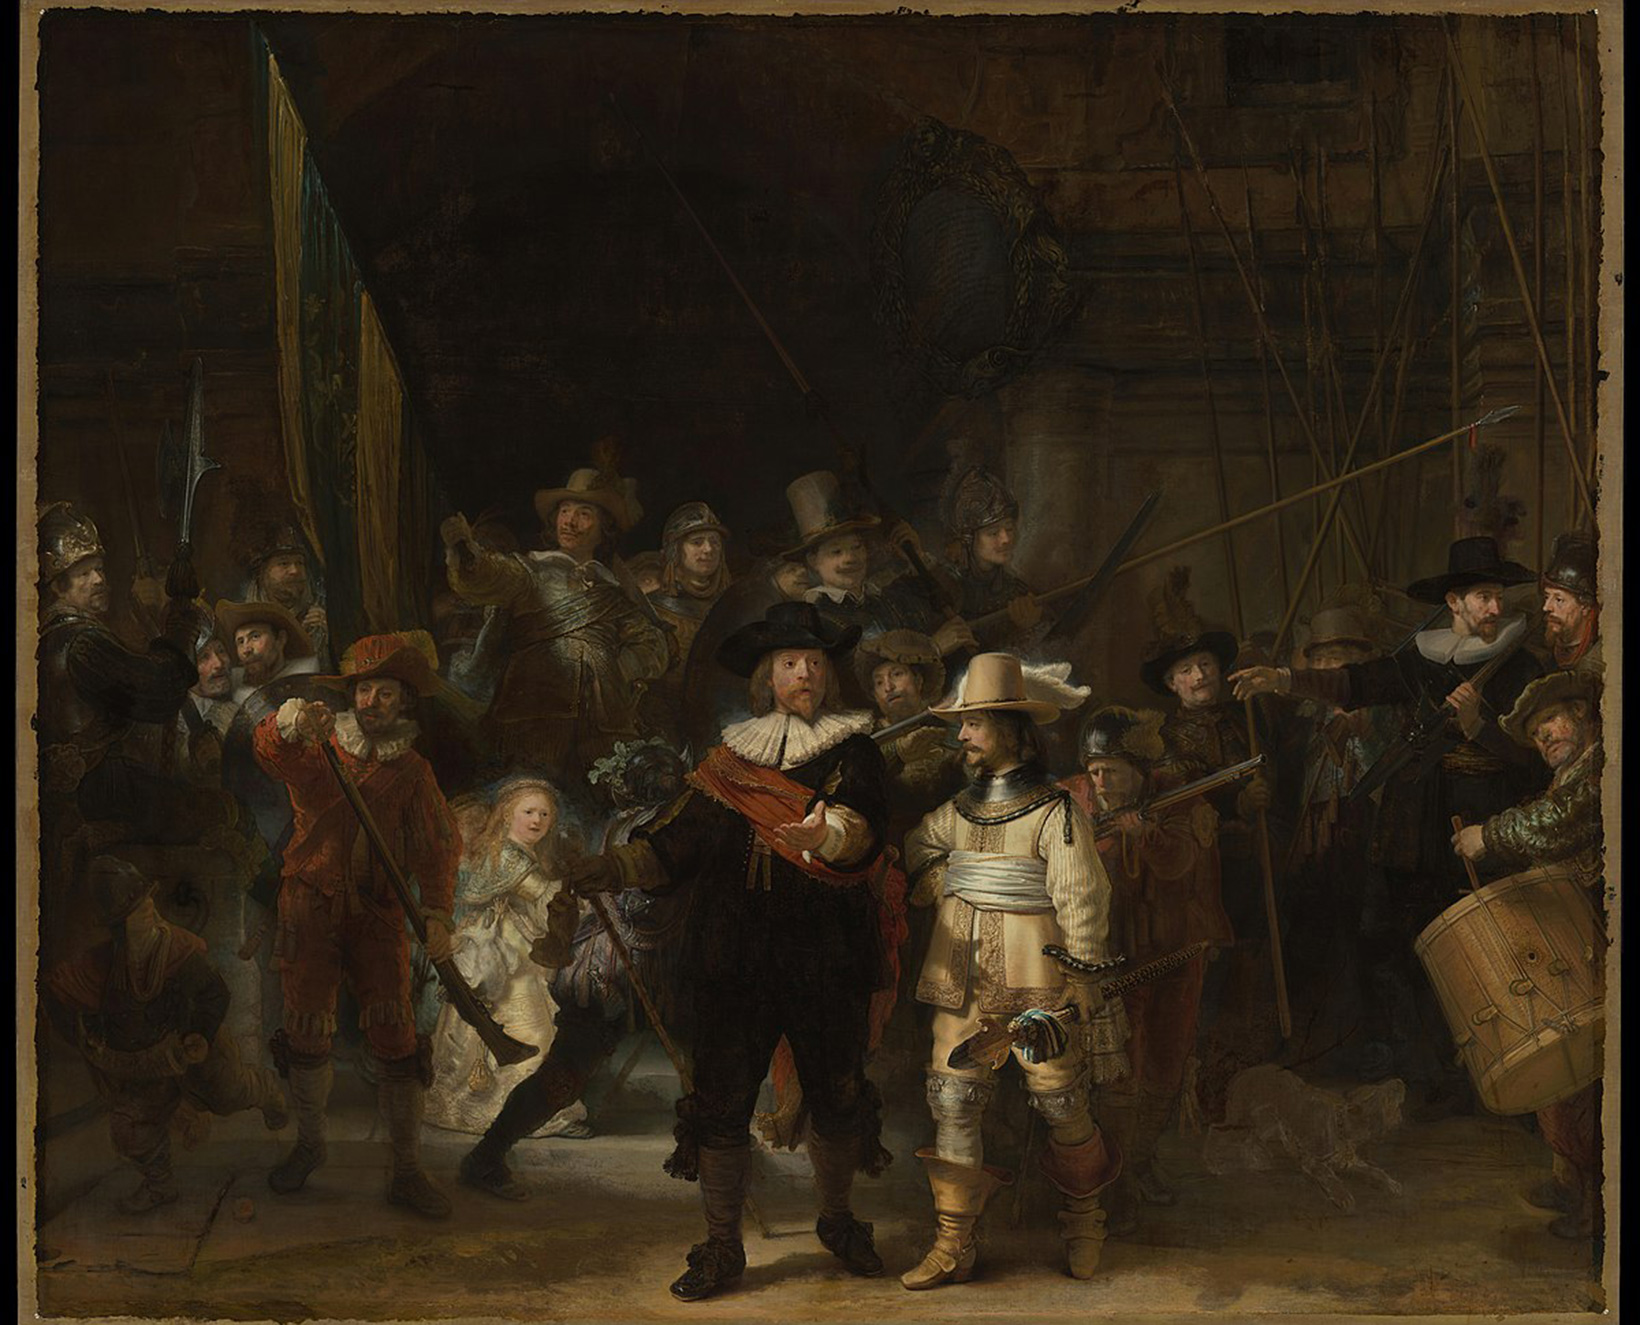 The Night Watch by Rembrandt Van Rijn